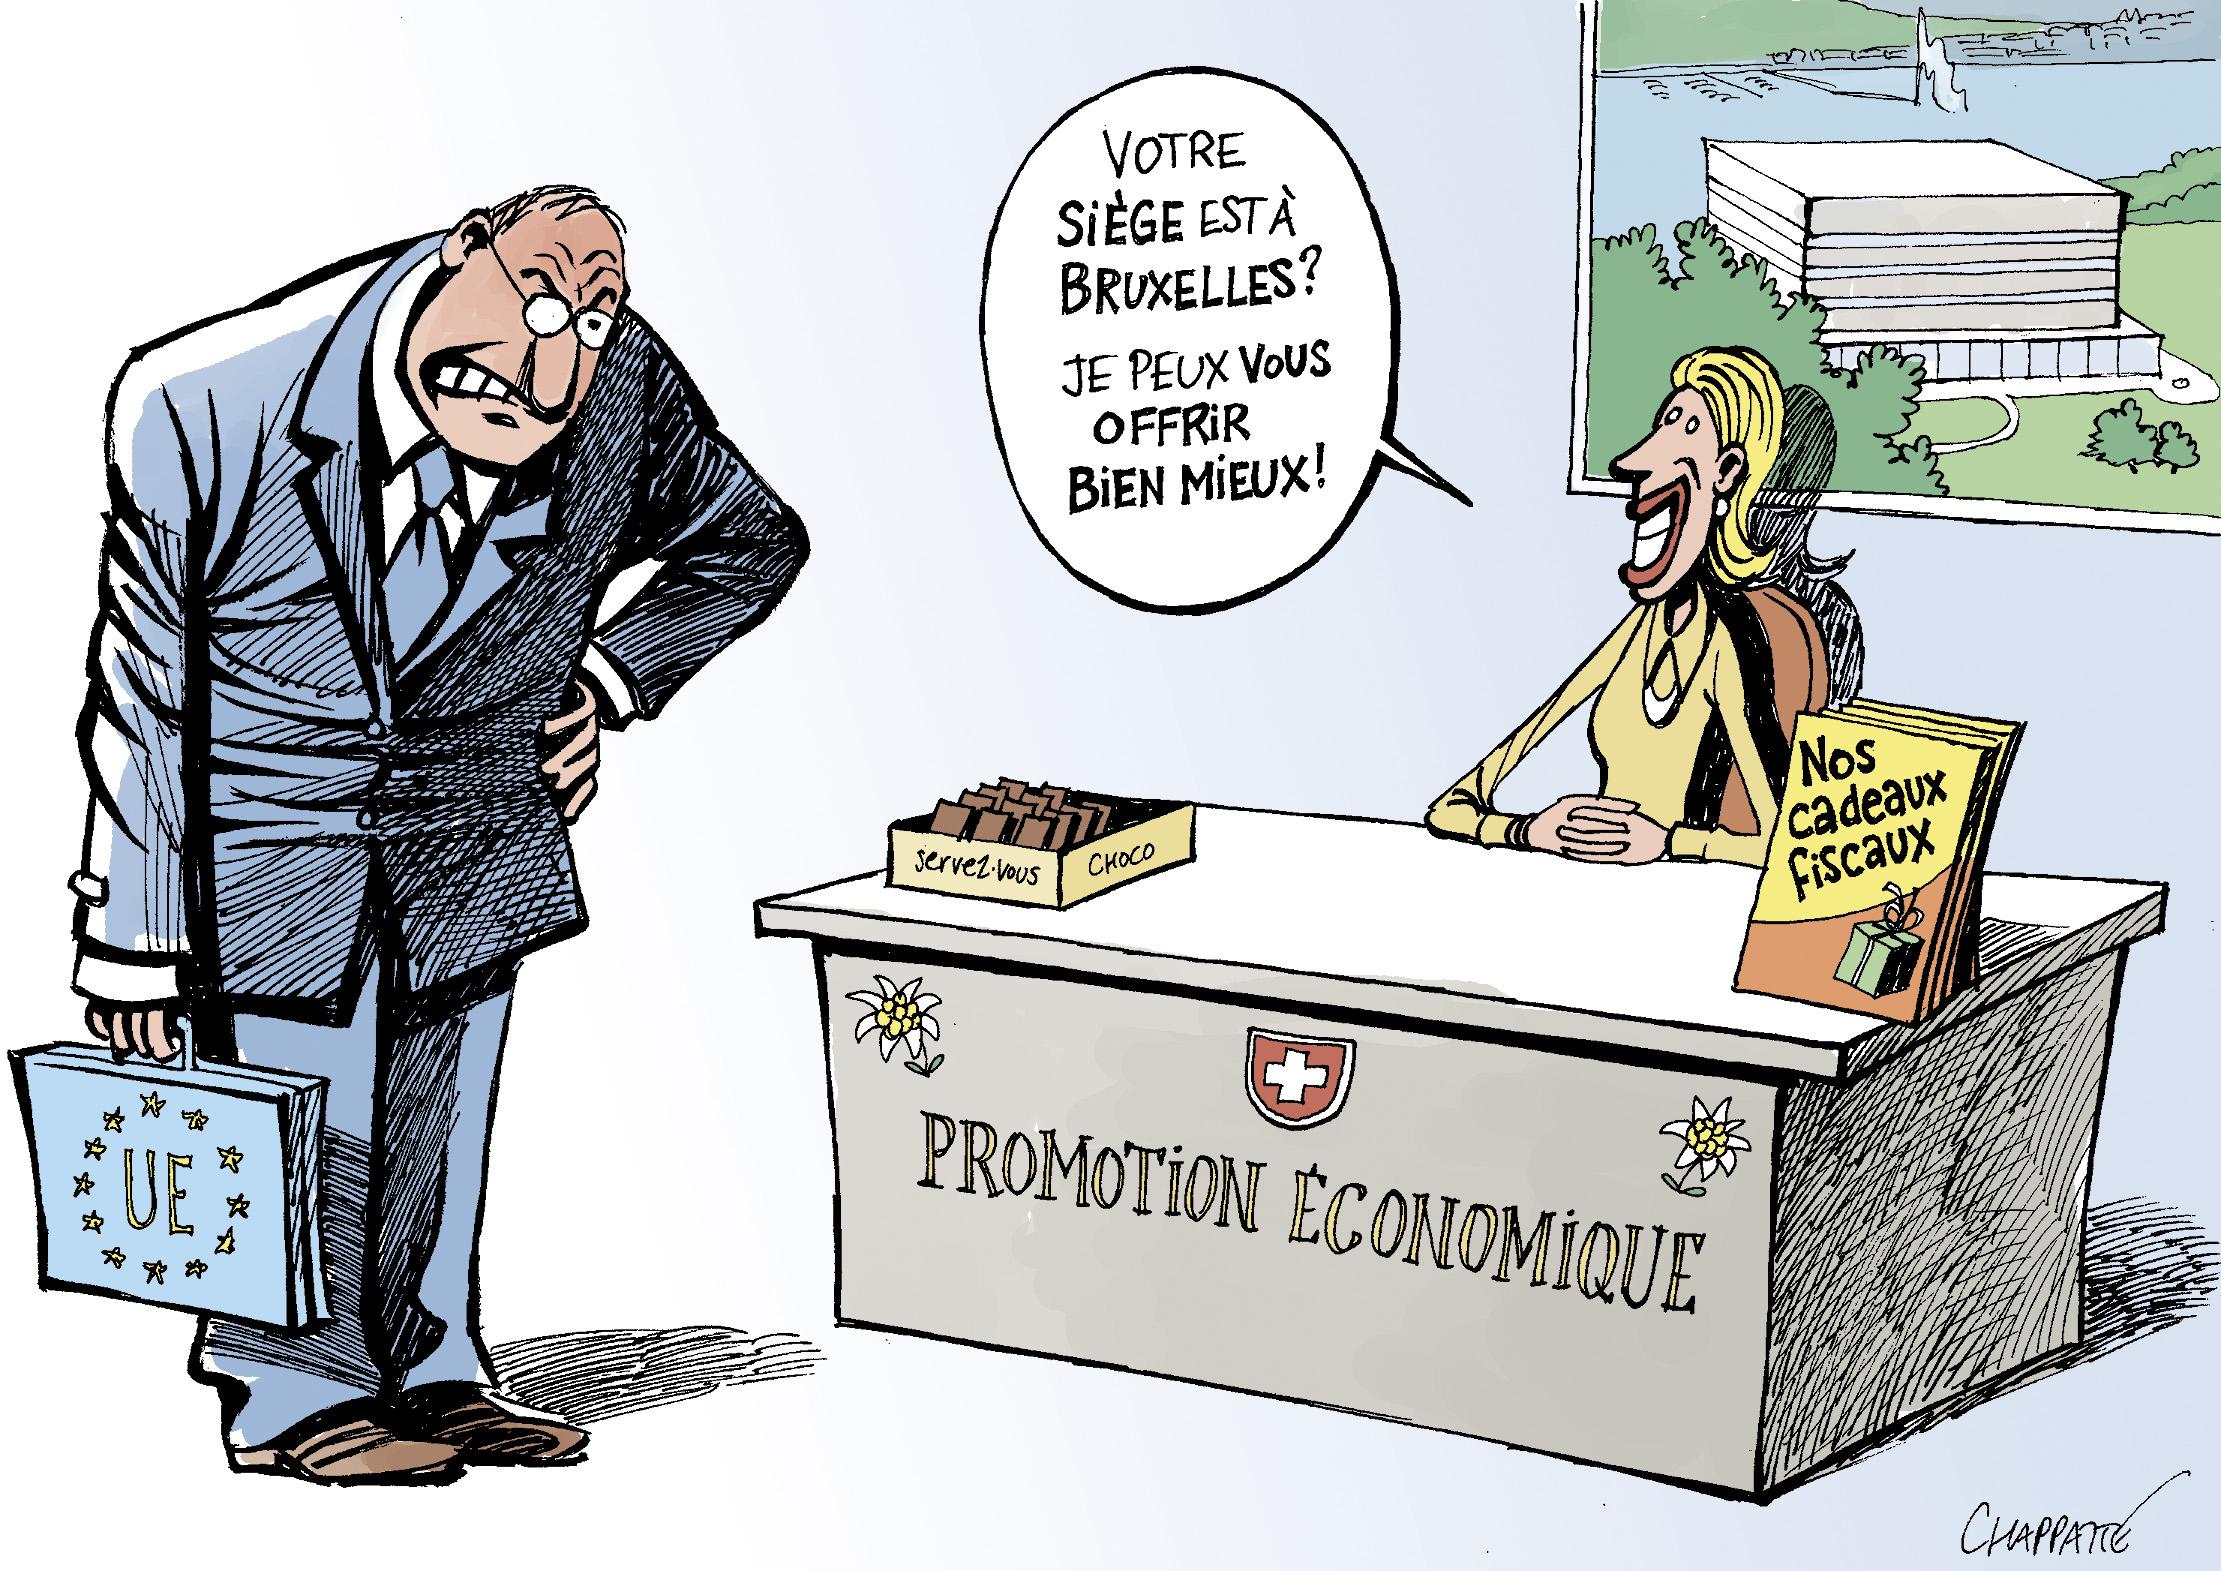 Les avantages fiscaux suisses fâchent lEurope